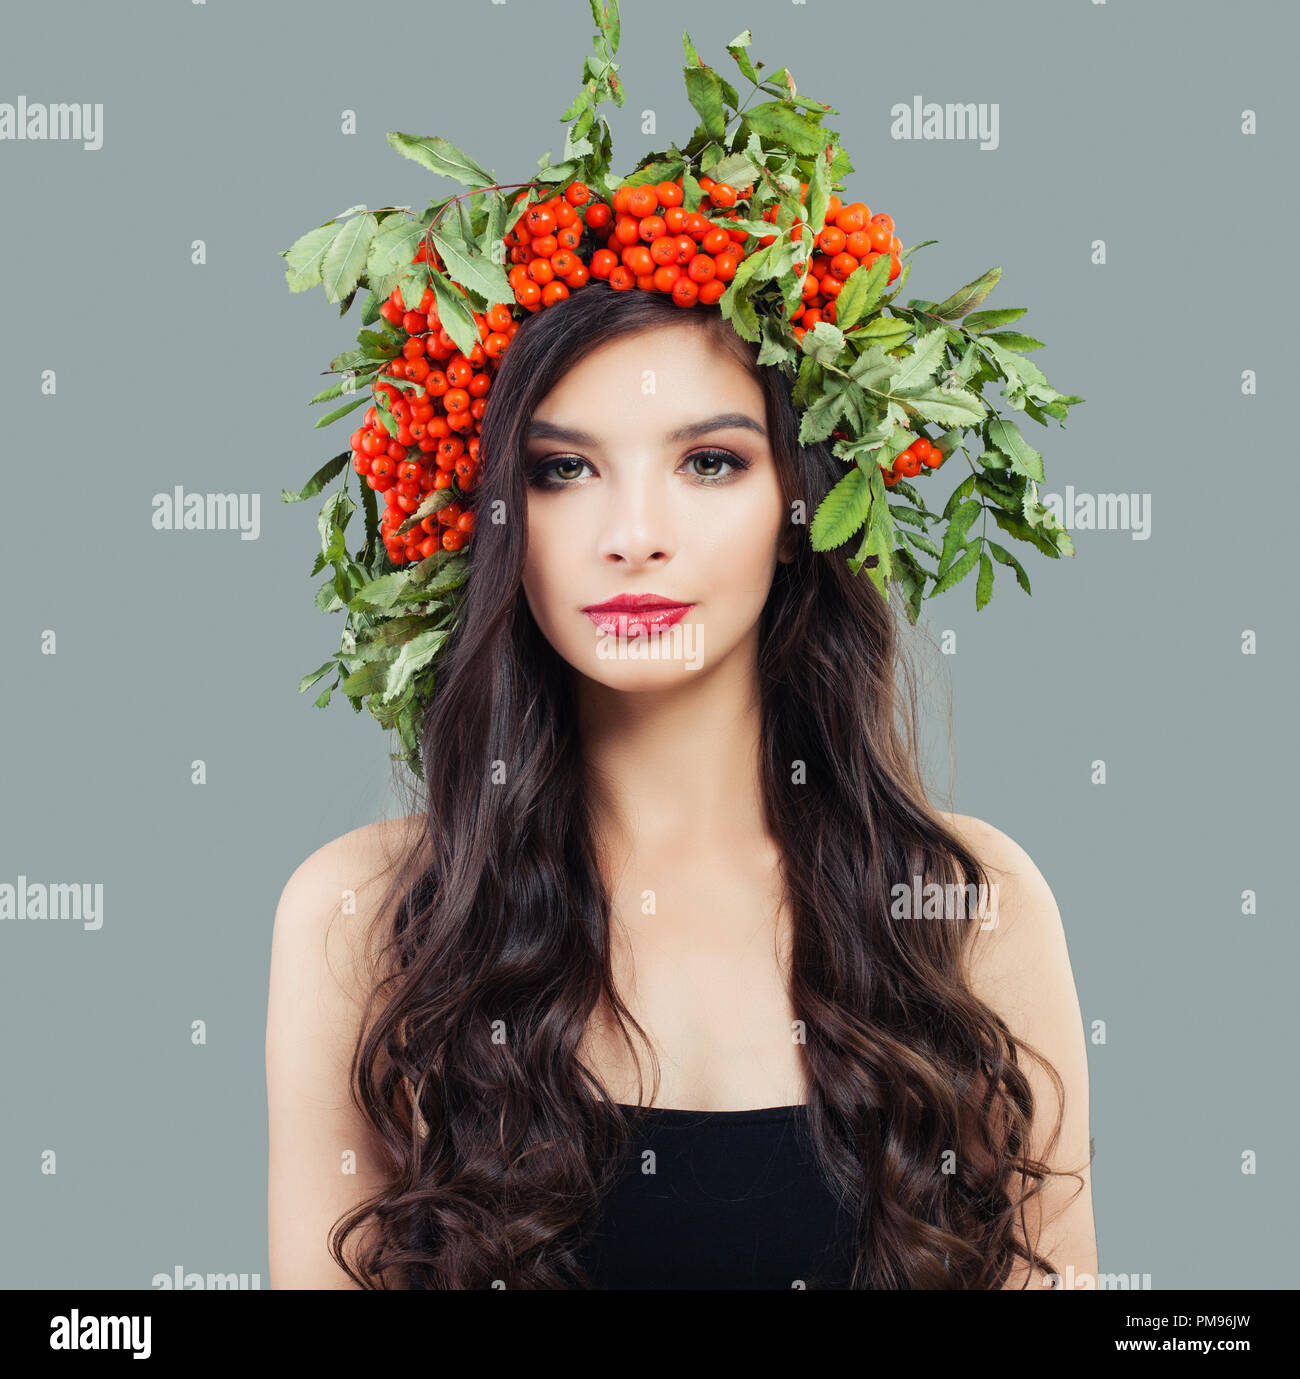 Attraktive Frau mit Make-up, lange wellige Haare und rote Beeren und Blätter Kranz Stockfoto